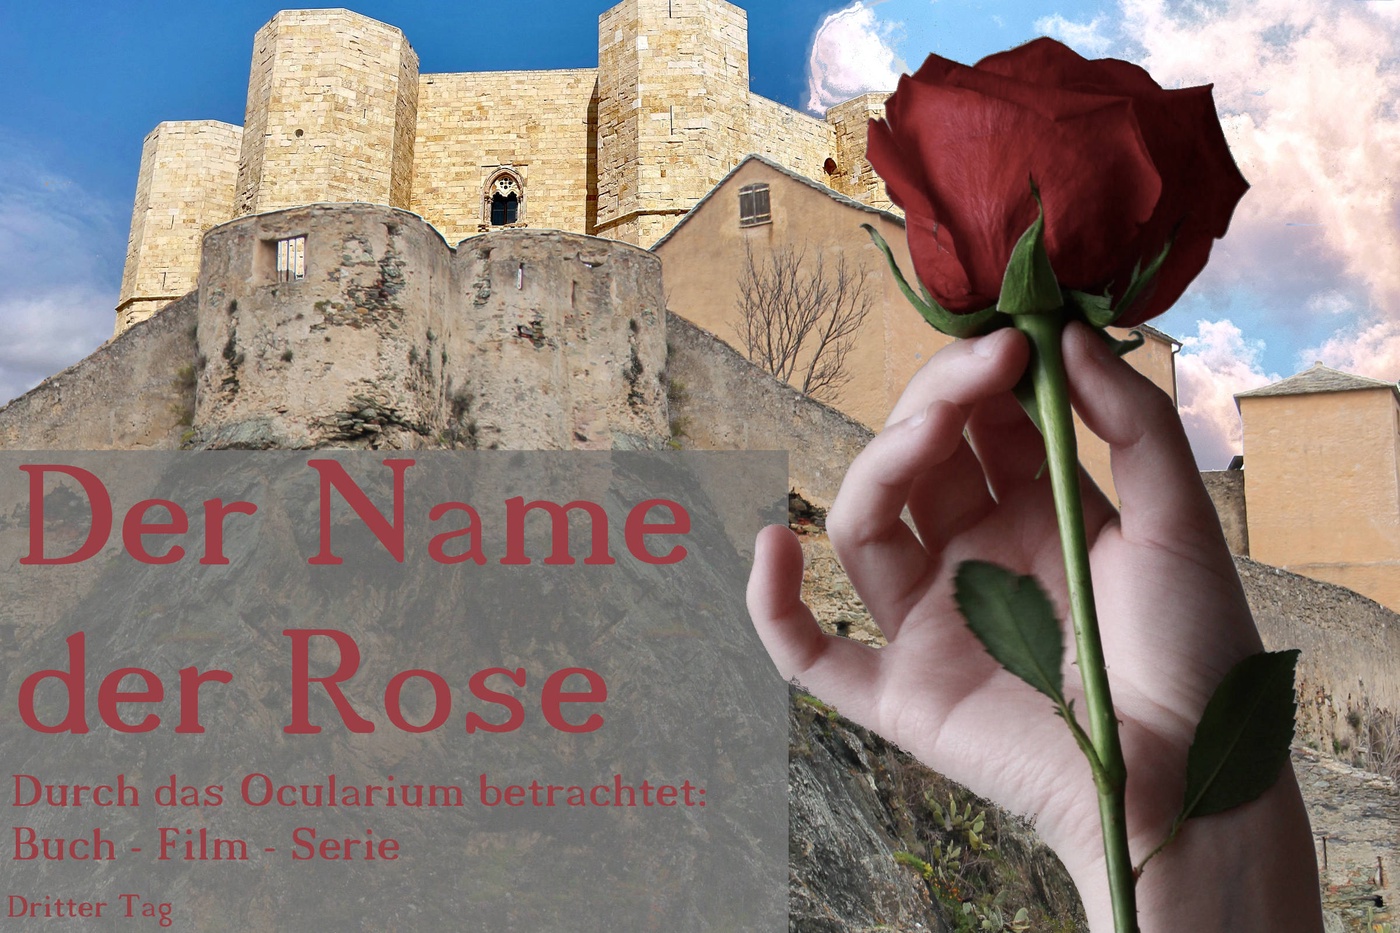 Der Name der Rose - Durch das Ocularium betrachtet: Buch - Film - Serie (5)